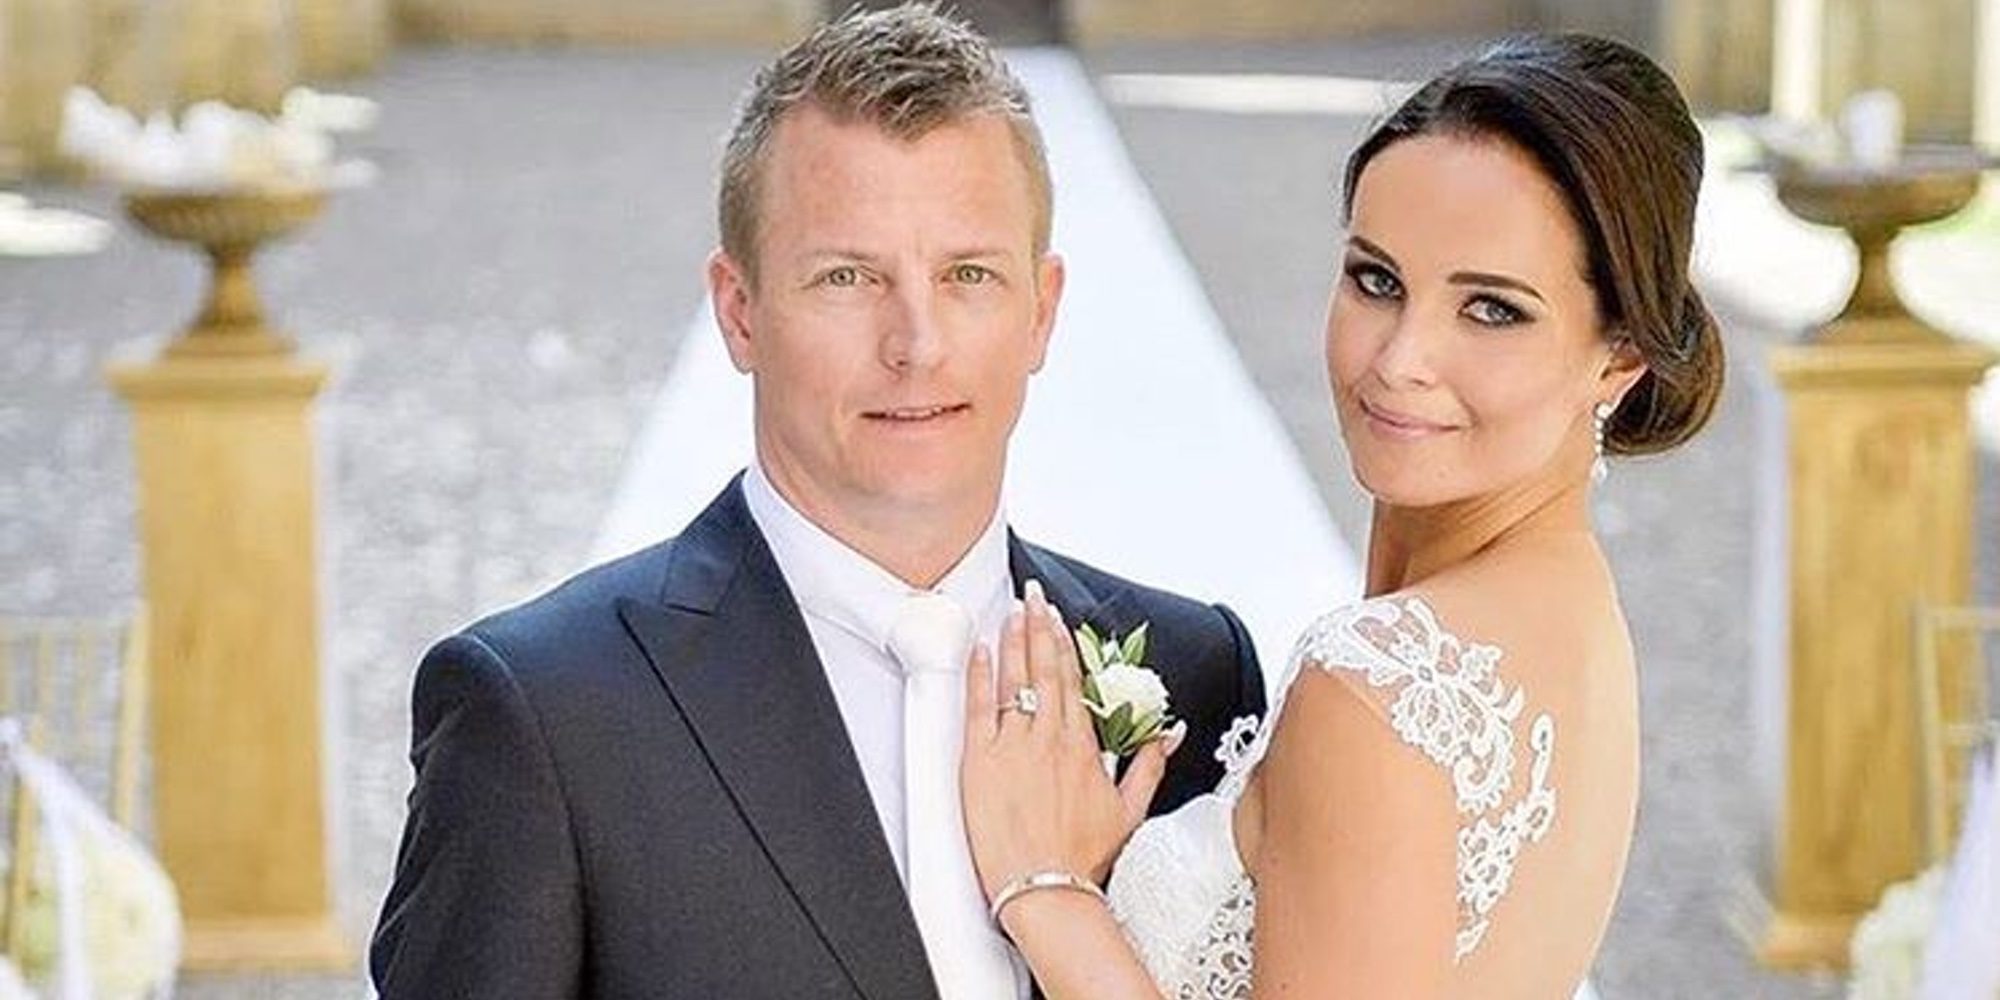 Kimi Raikkonen se casa con la modelo Minttu Virtanen en una romántica boda italiana